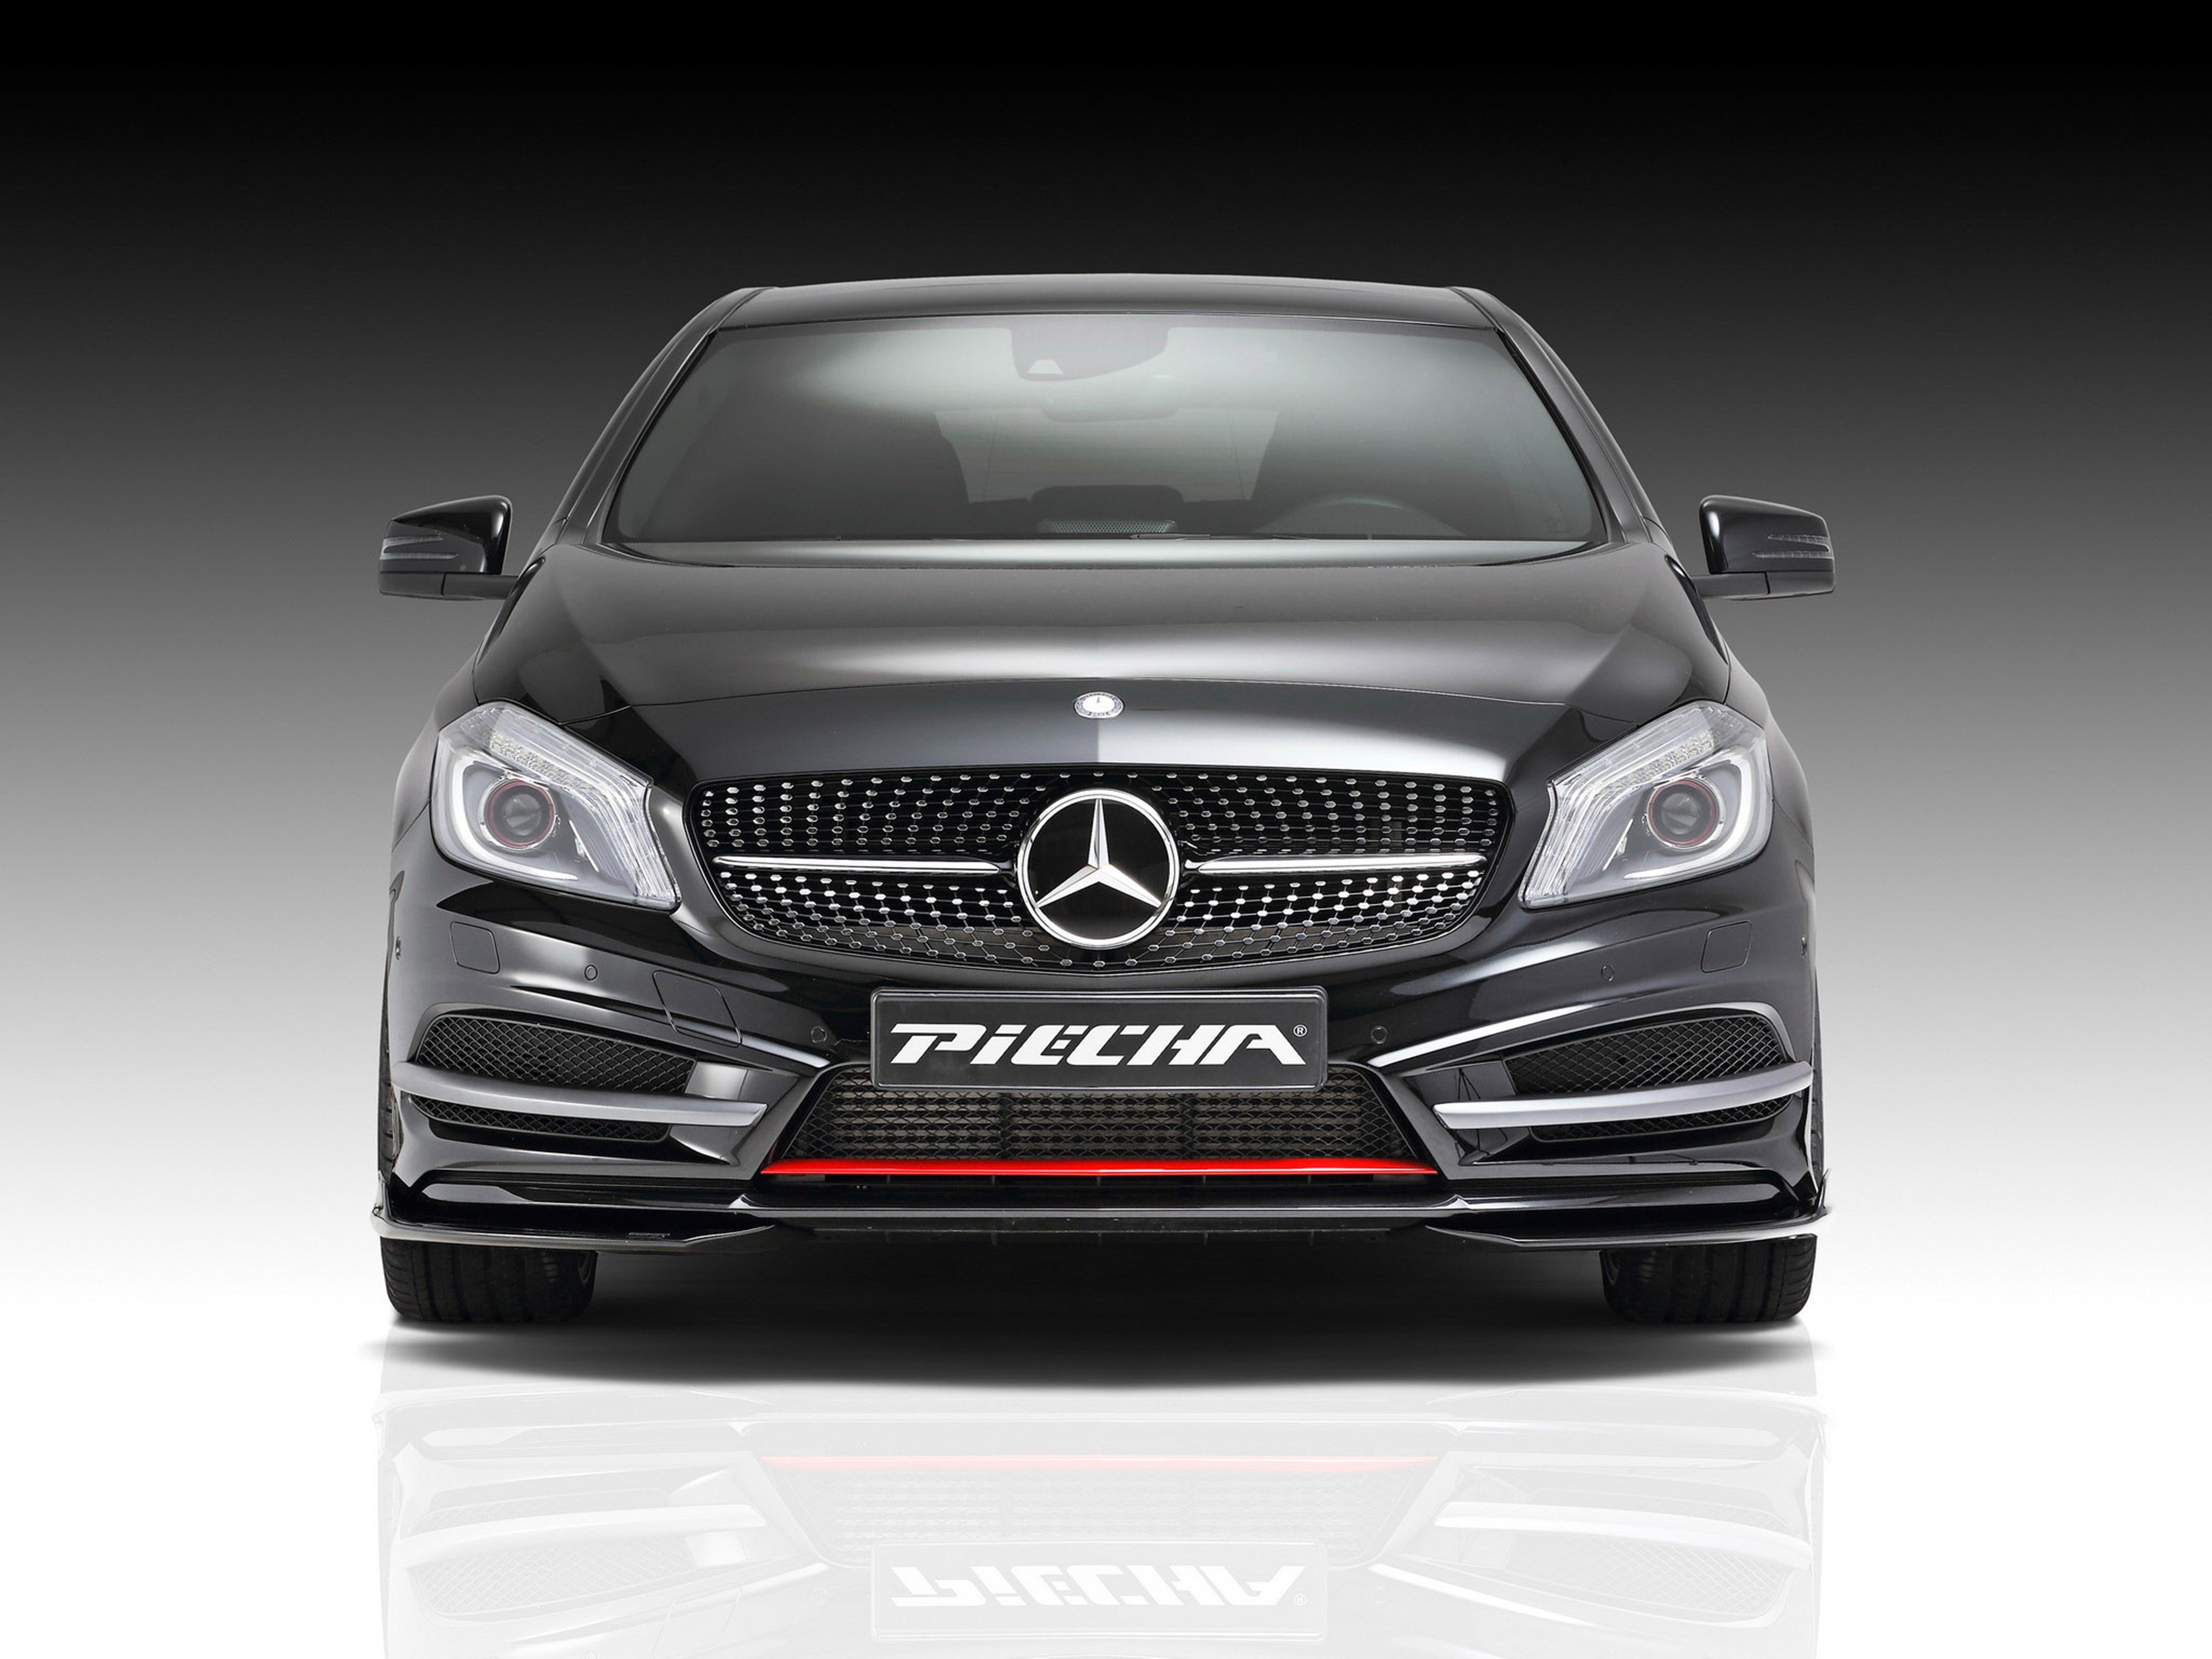 piecha, Design, Mercedes benz, A class, Amg, Tunning, Car, Germany, 2014, 4000x3000 Wallpaper